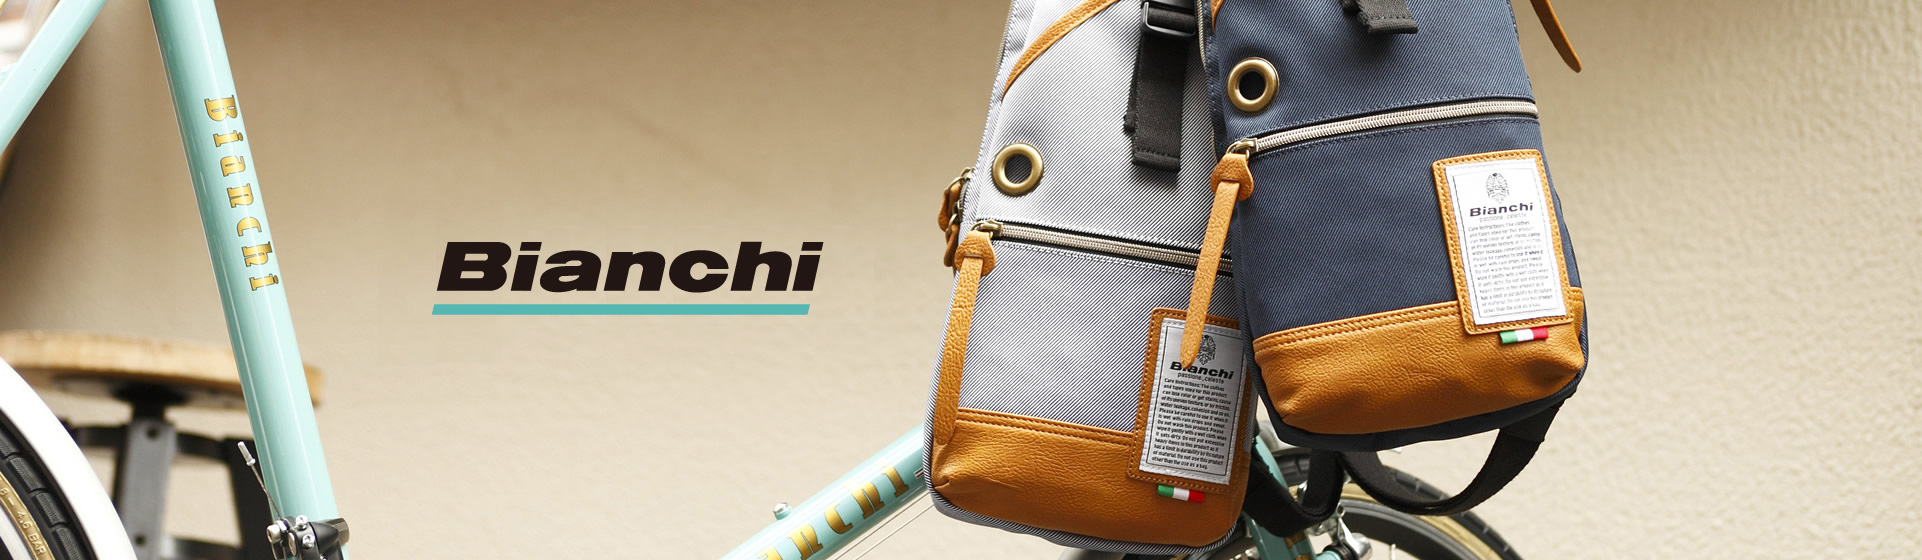 公式]Bianchi - ビアンキ | バッグメーカー直営通販サイト T2O ONLINE STORE